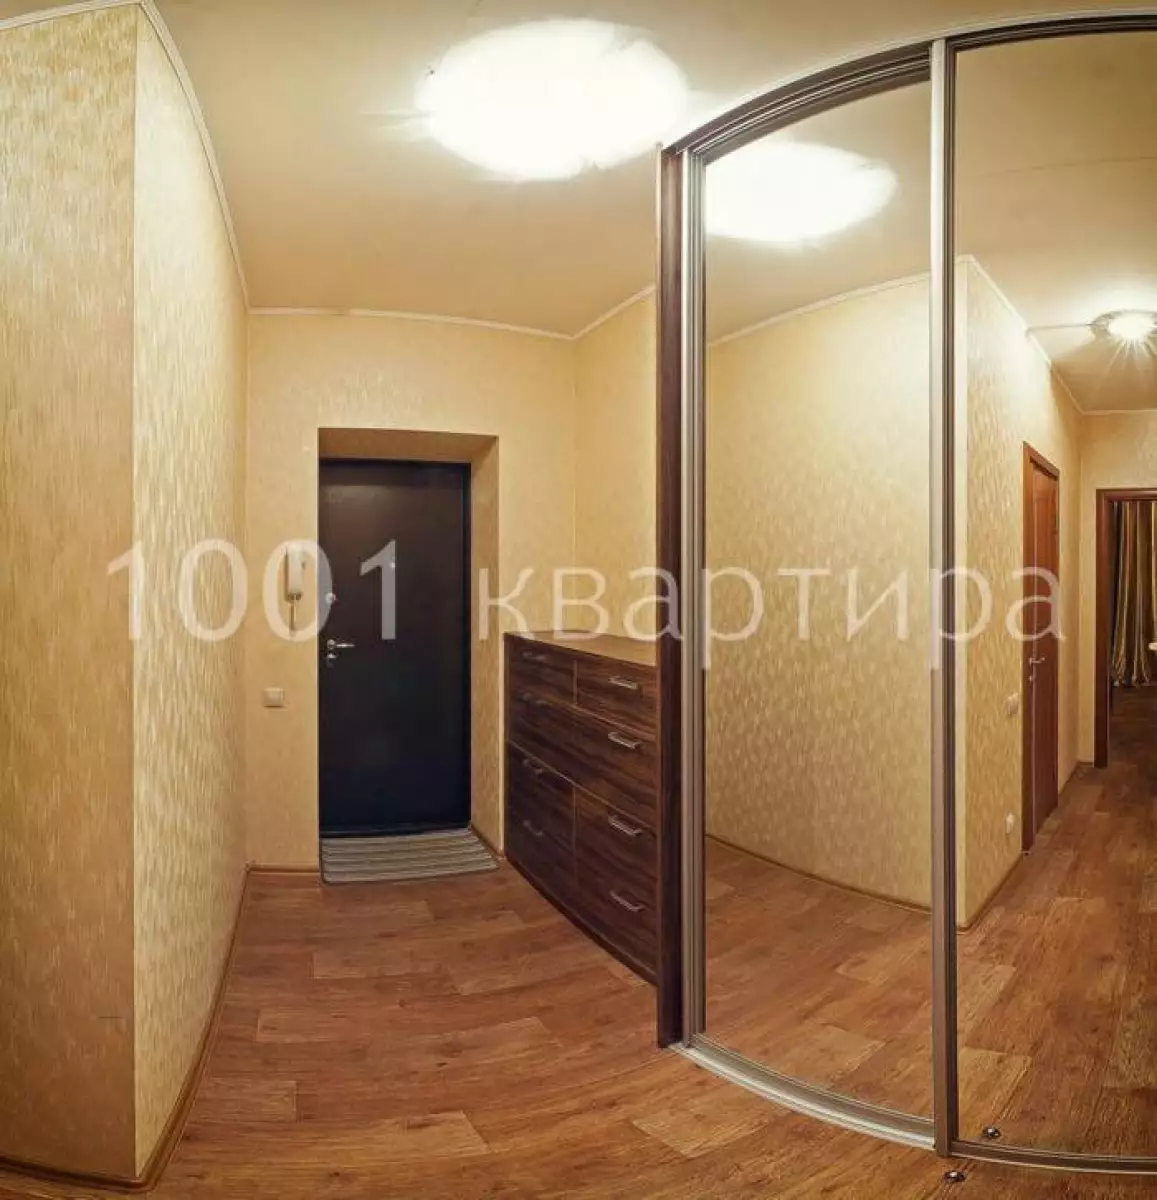 Вариант #126917 для аренды посуточно в Новосибирске Геодезическая, д.5/1 на 4 гостей - фото 8